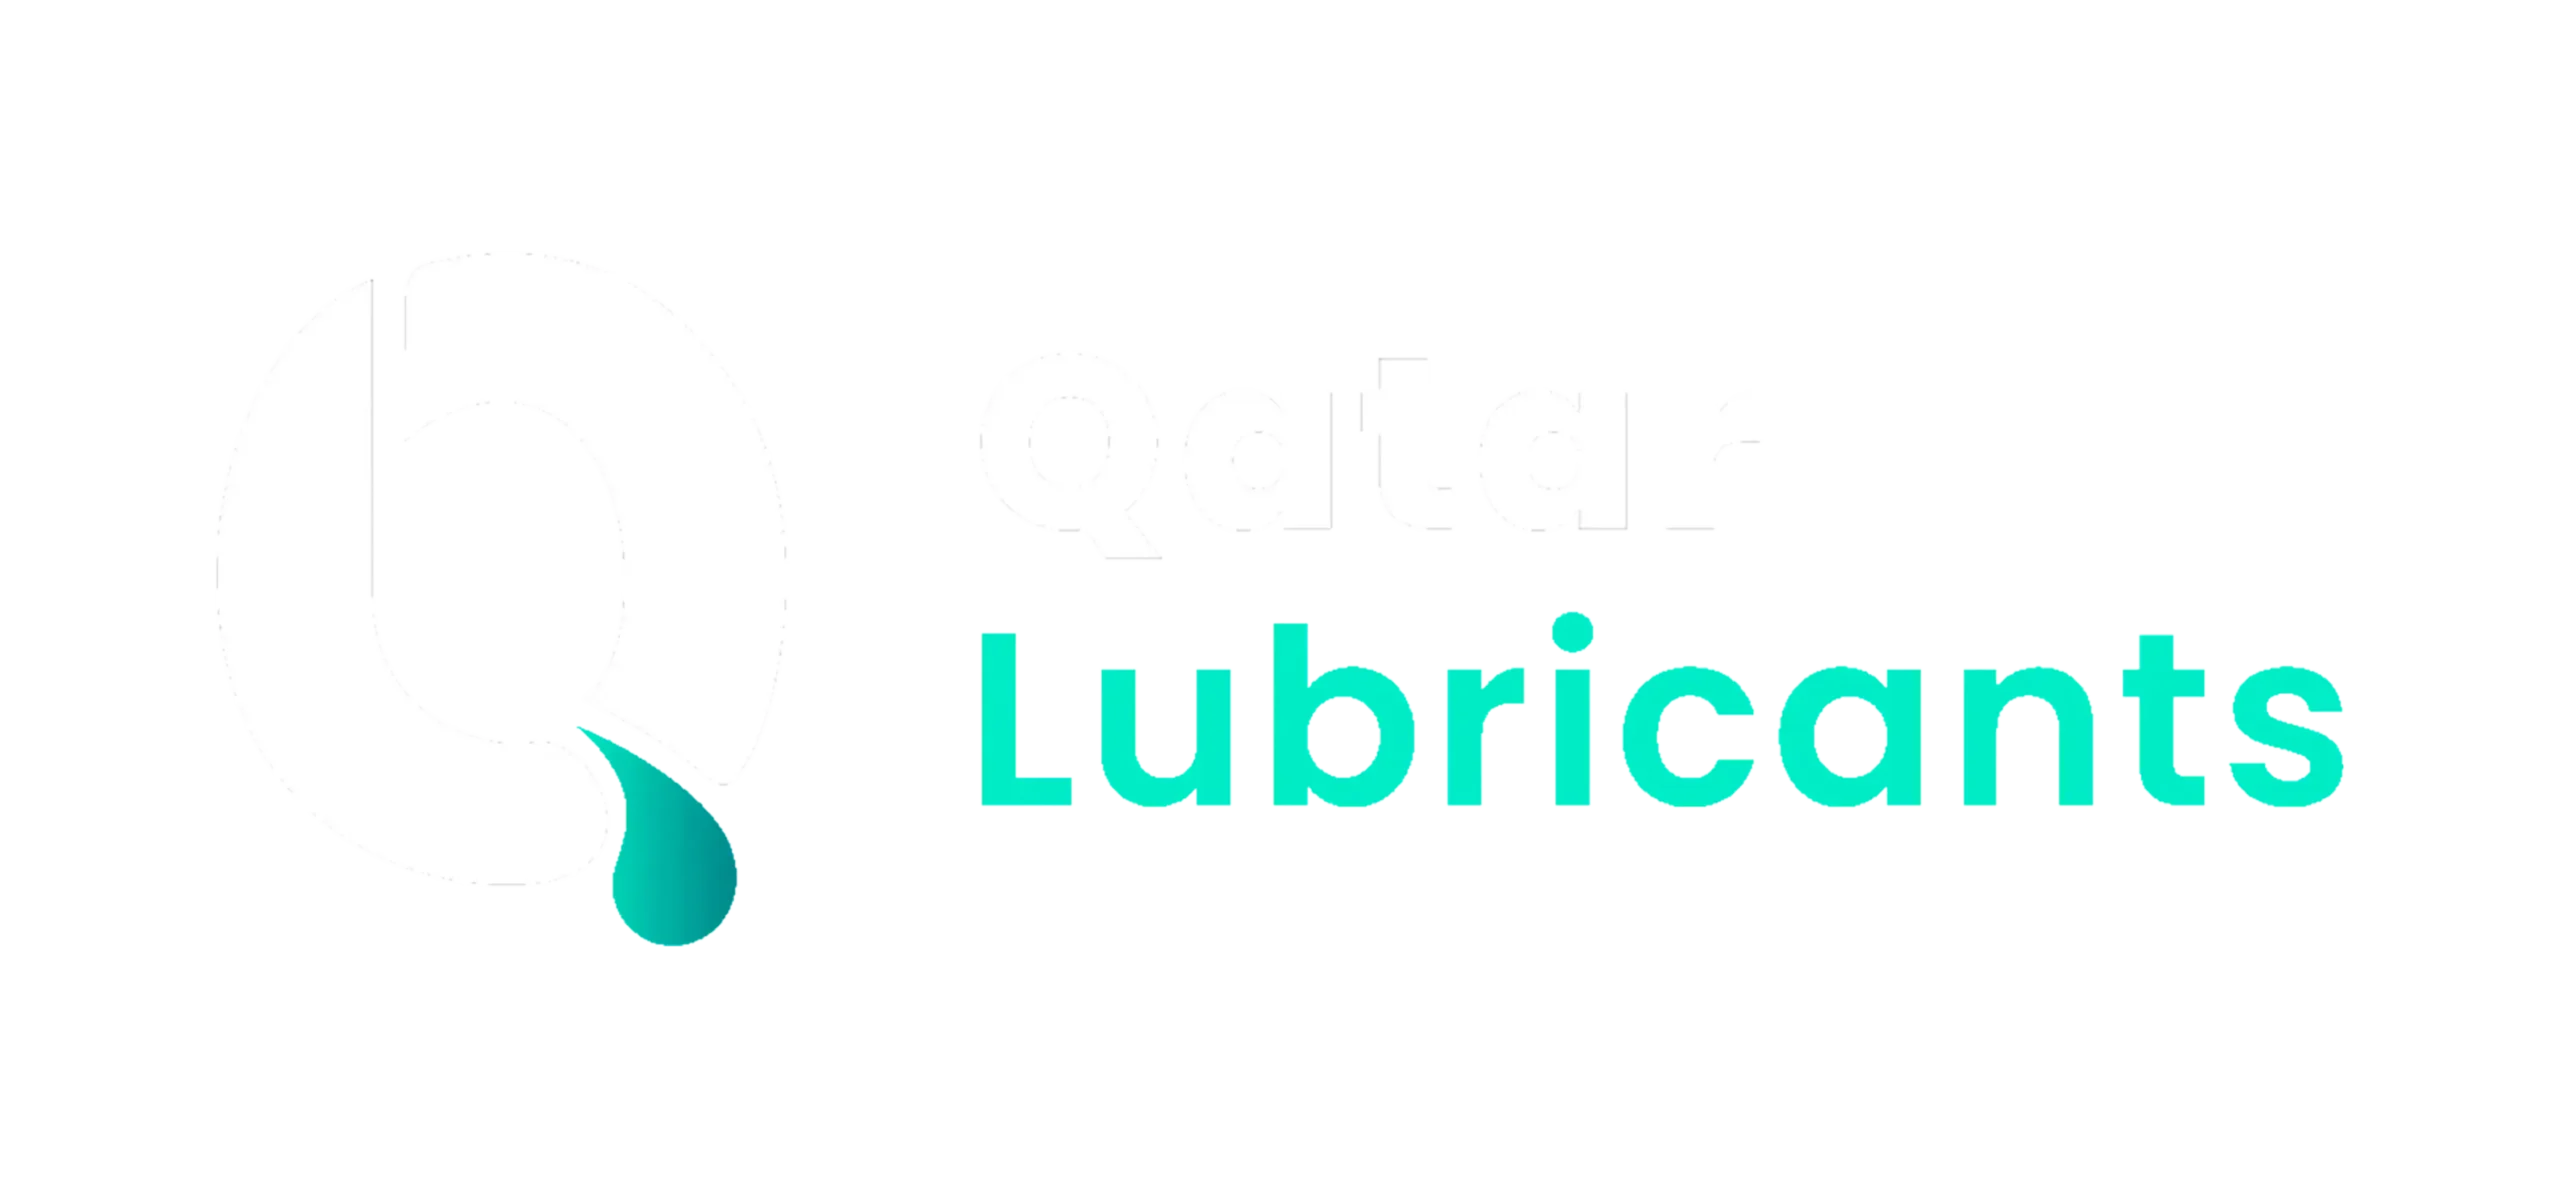 qatar lubricants